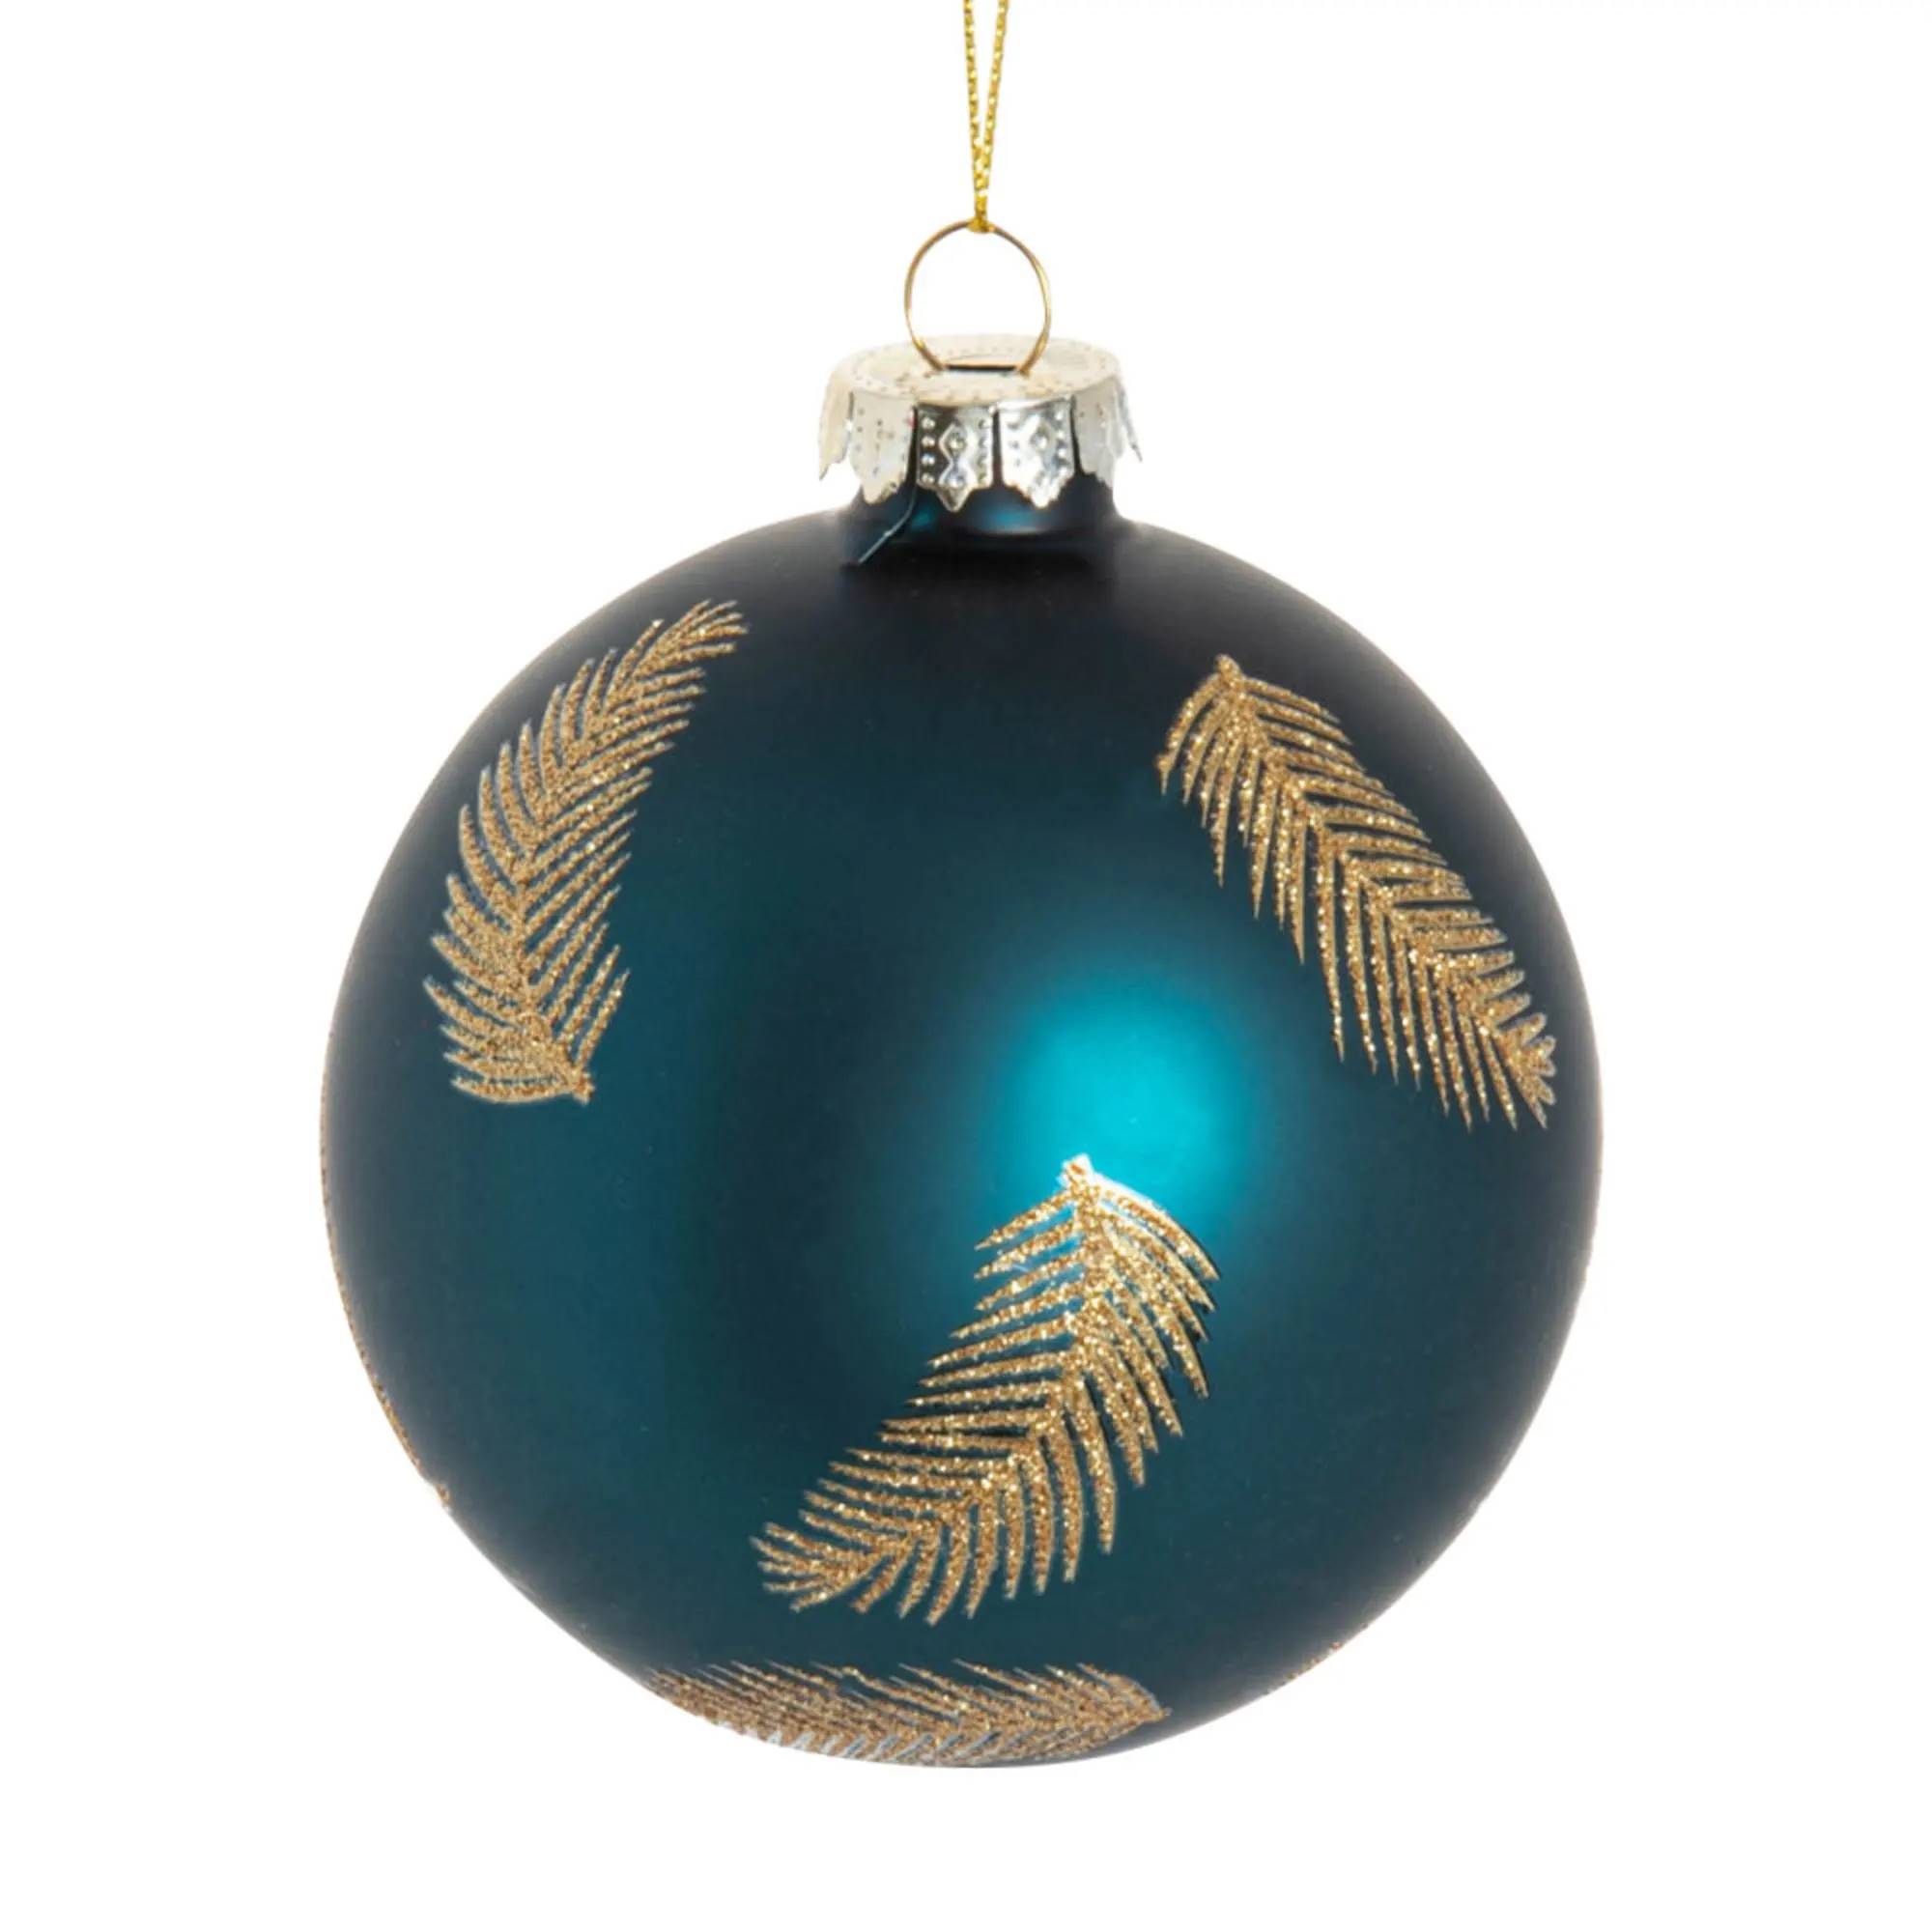 Set de 6 bolas de Navidad de cristal azul estampado con plumas y purpurina.